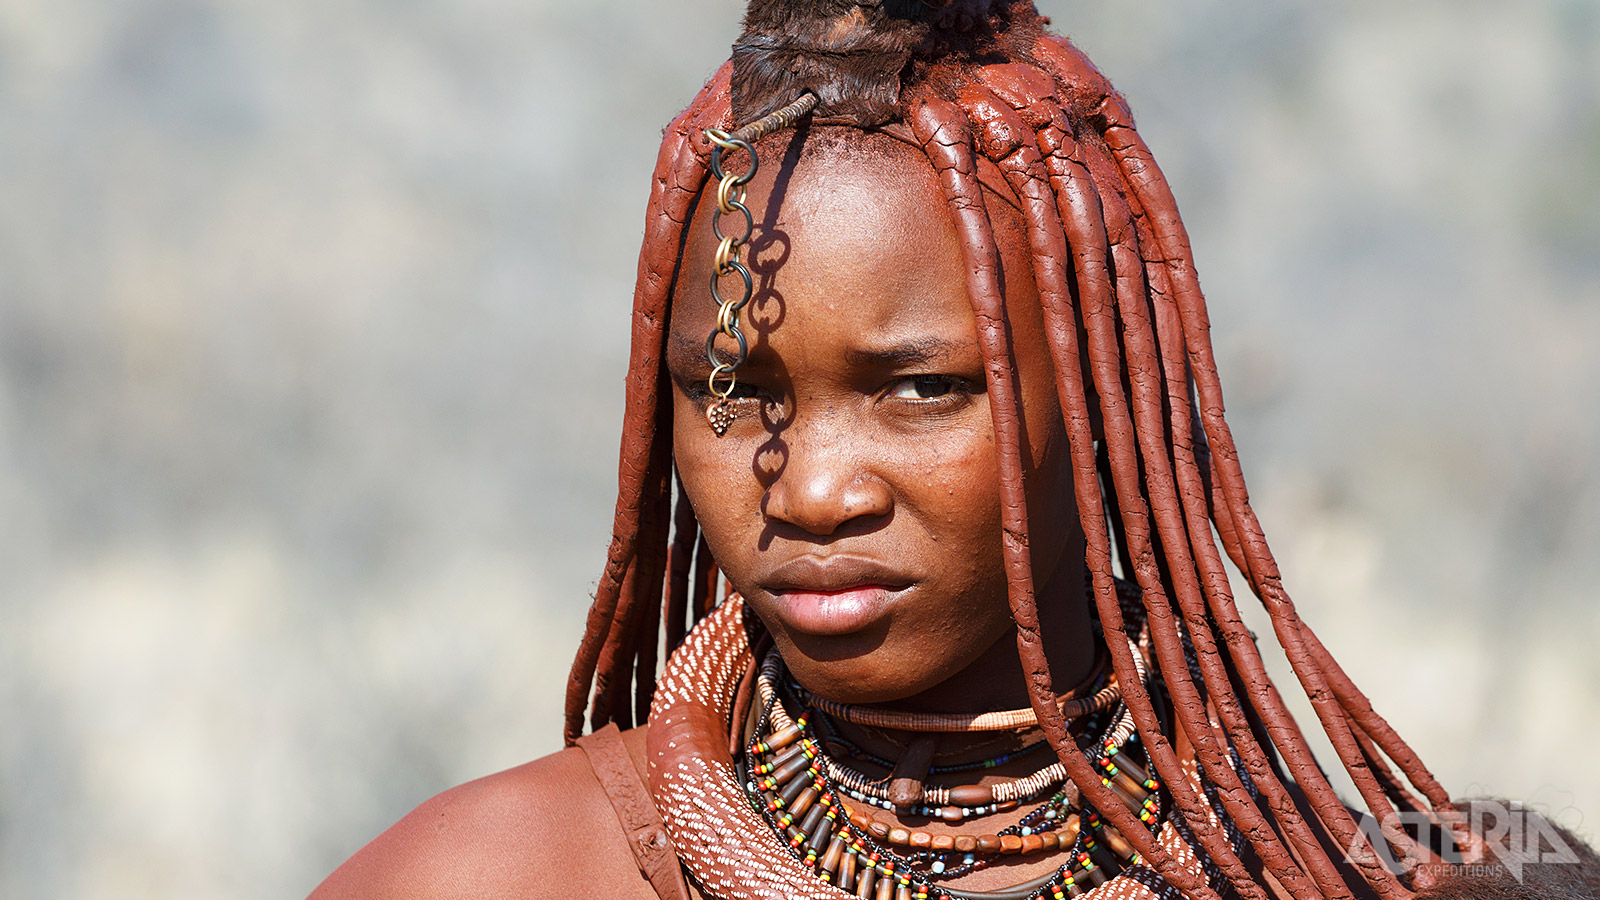 Himba-vrouwen wassen zich niet maar smeren zich in met ’Otjize’, een mengsel van geitenvet, kruiden en oker